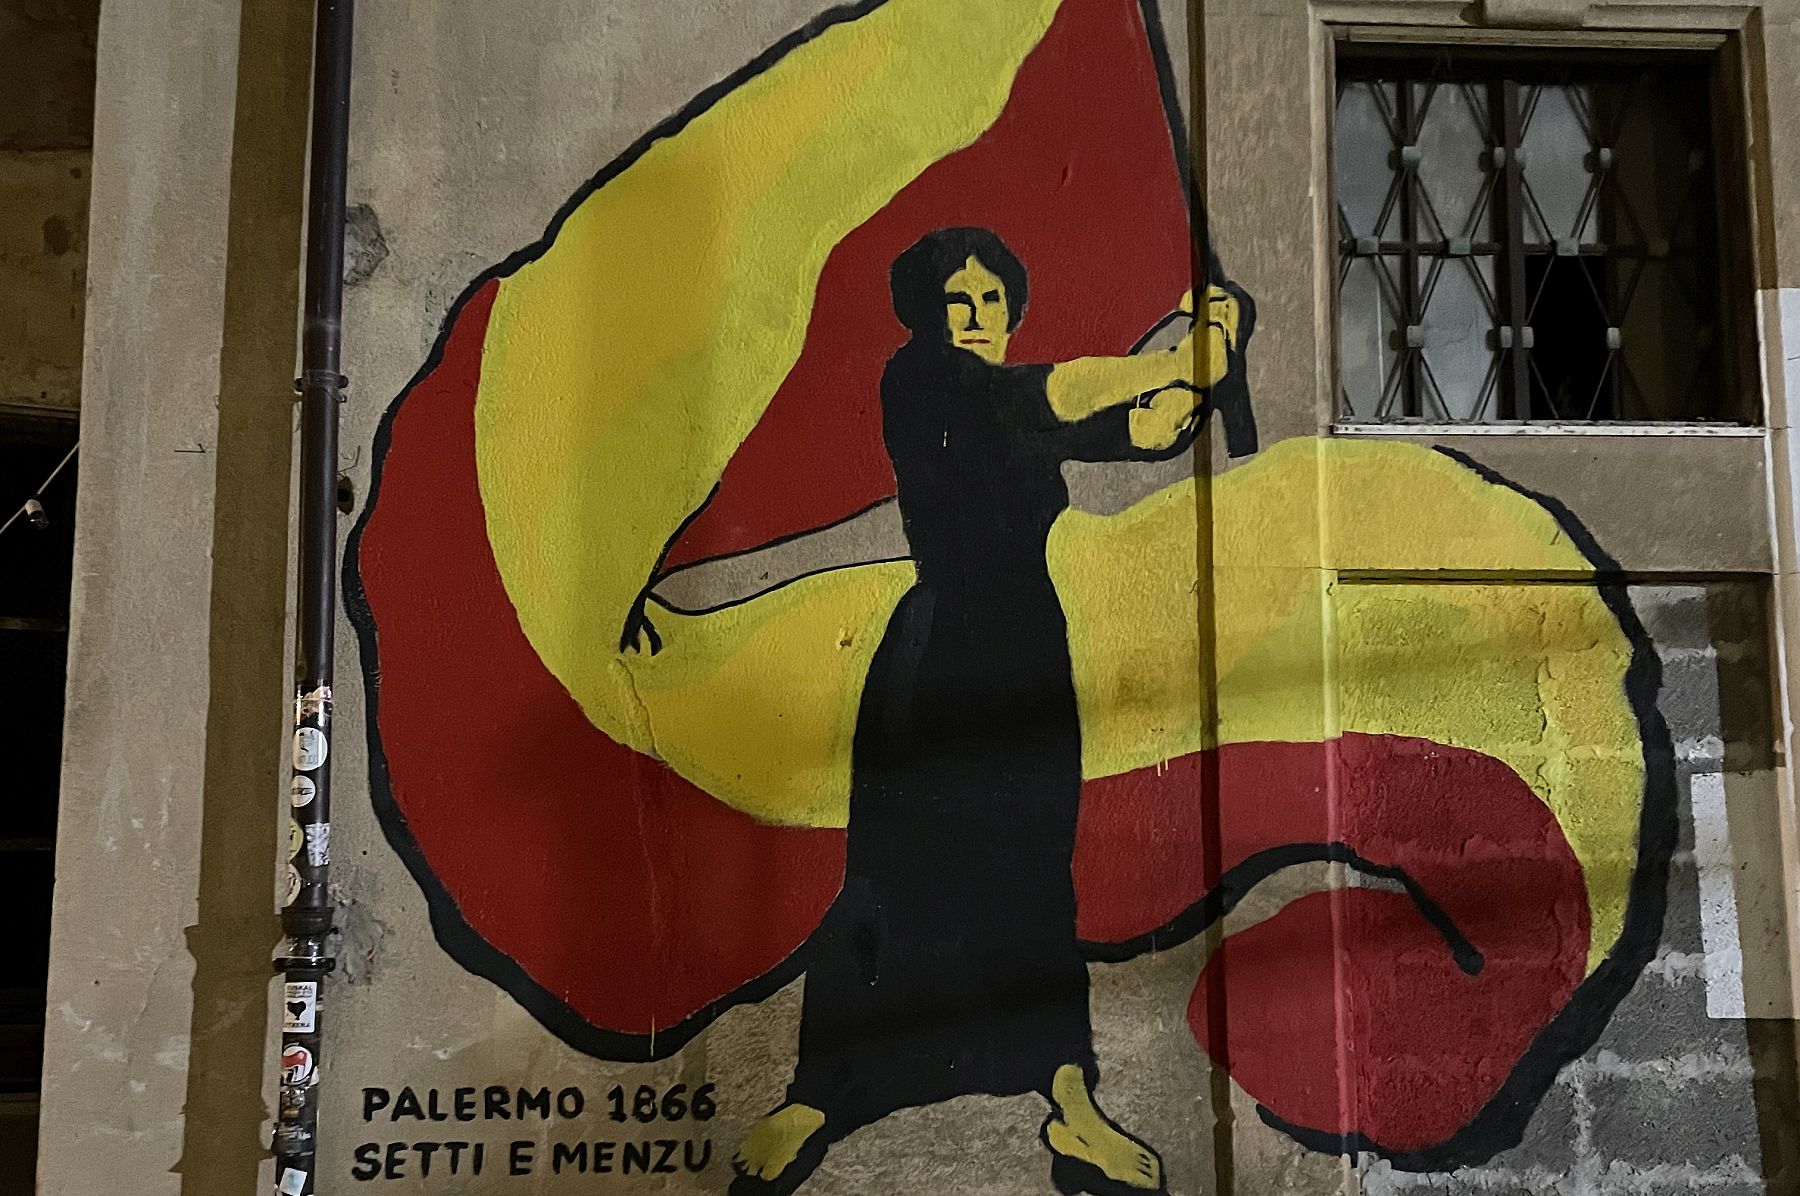 הסיפוח של סיציליה לאיטליה עדיין משפיע עליה לרעה. ציור קיר בפלרמו המציין את המרד נגד הסיפוח האיטלקי ב-1886 (צילום: מתן מוריסון)